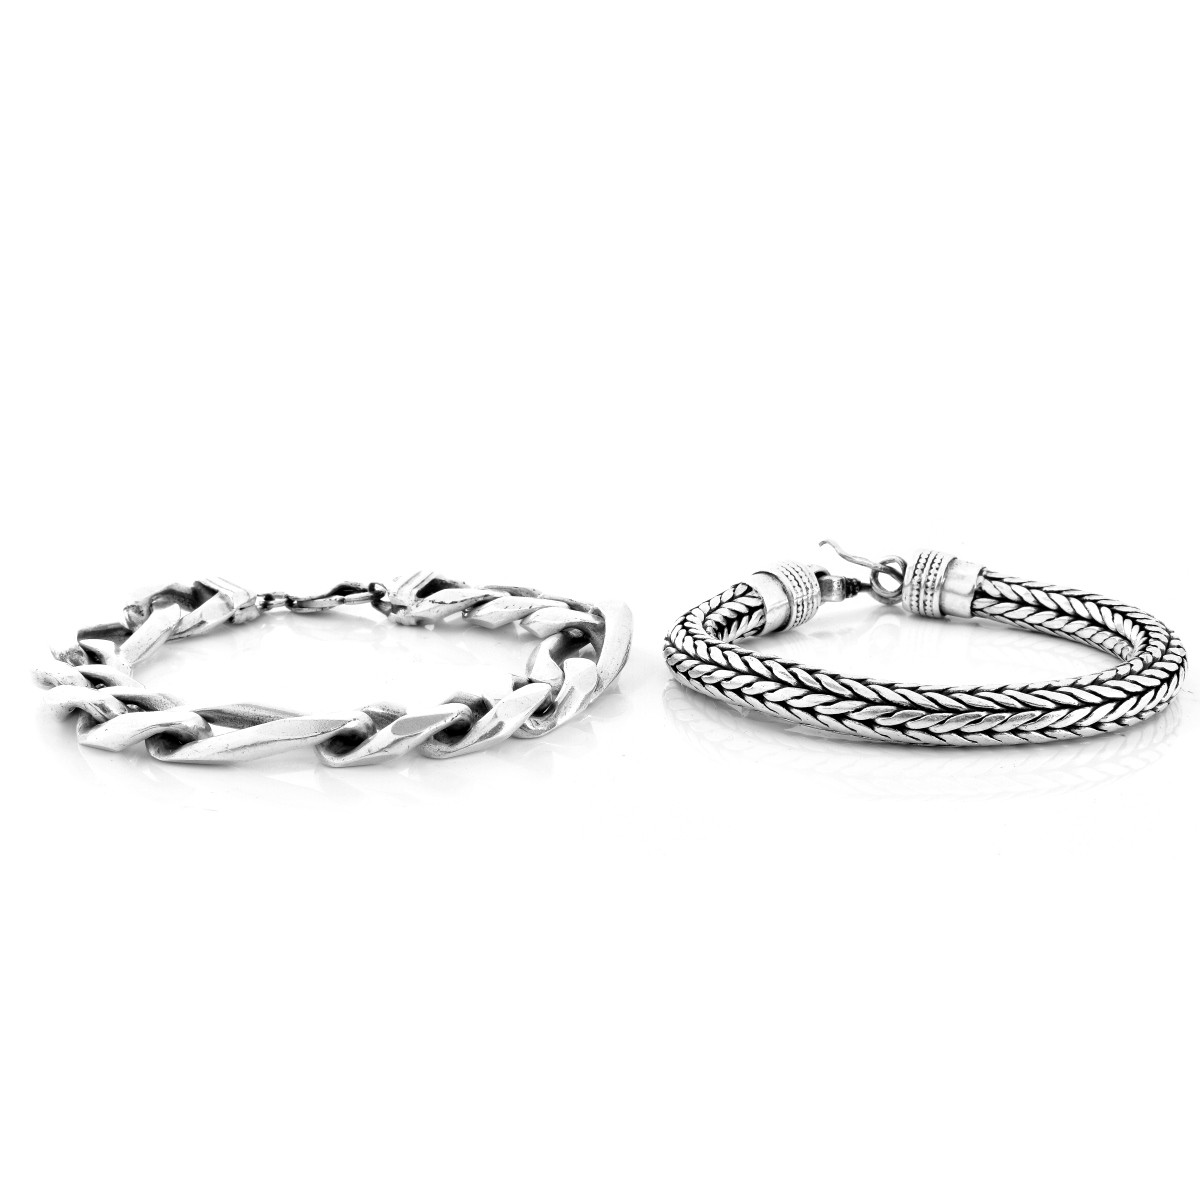 Two Men's Silver Bracelets